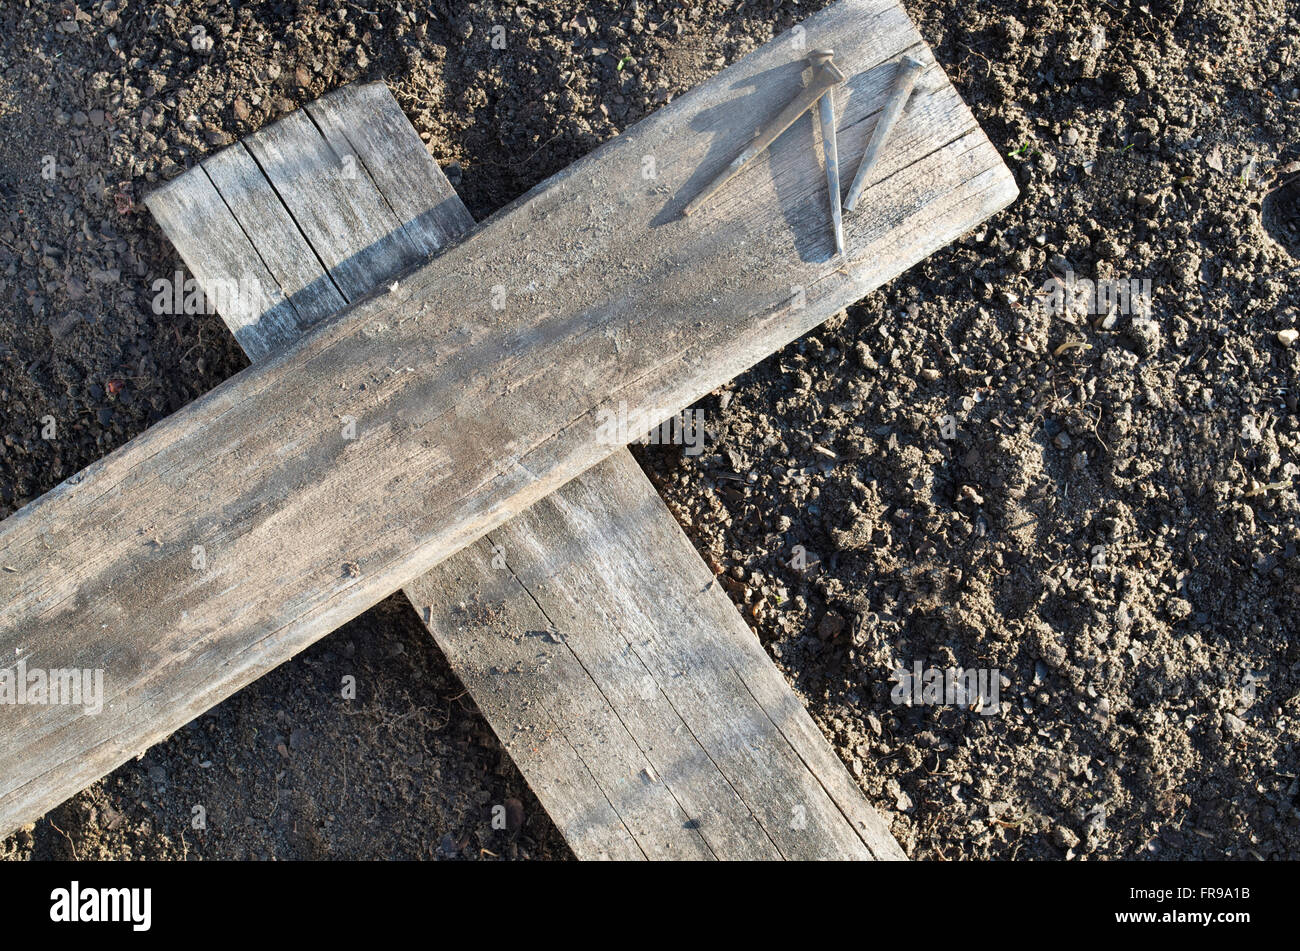 Hölzerne Kreuz Verlegung auf dem Boden mit drei Nägel in der Nähe Stockfoto